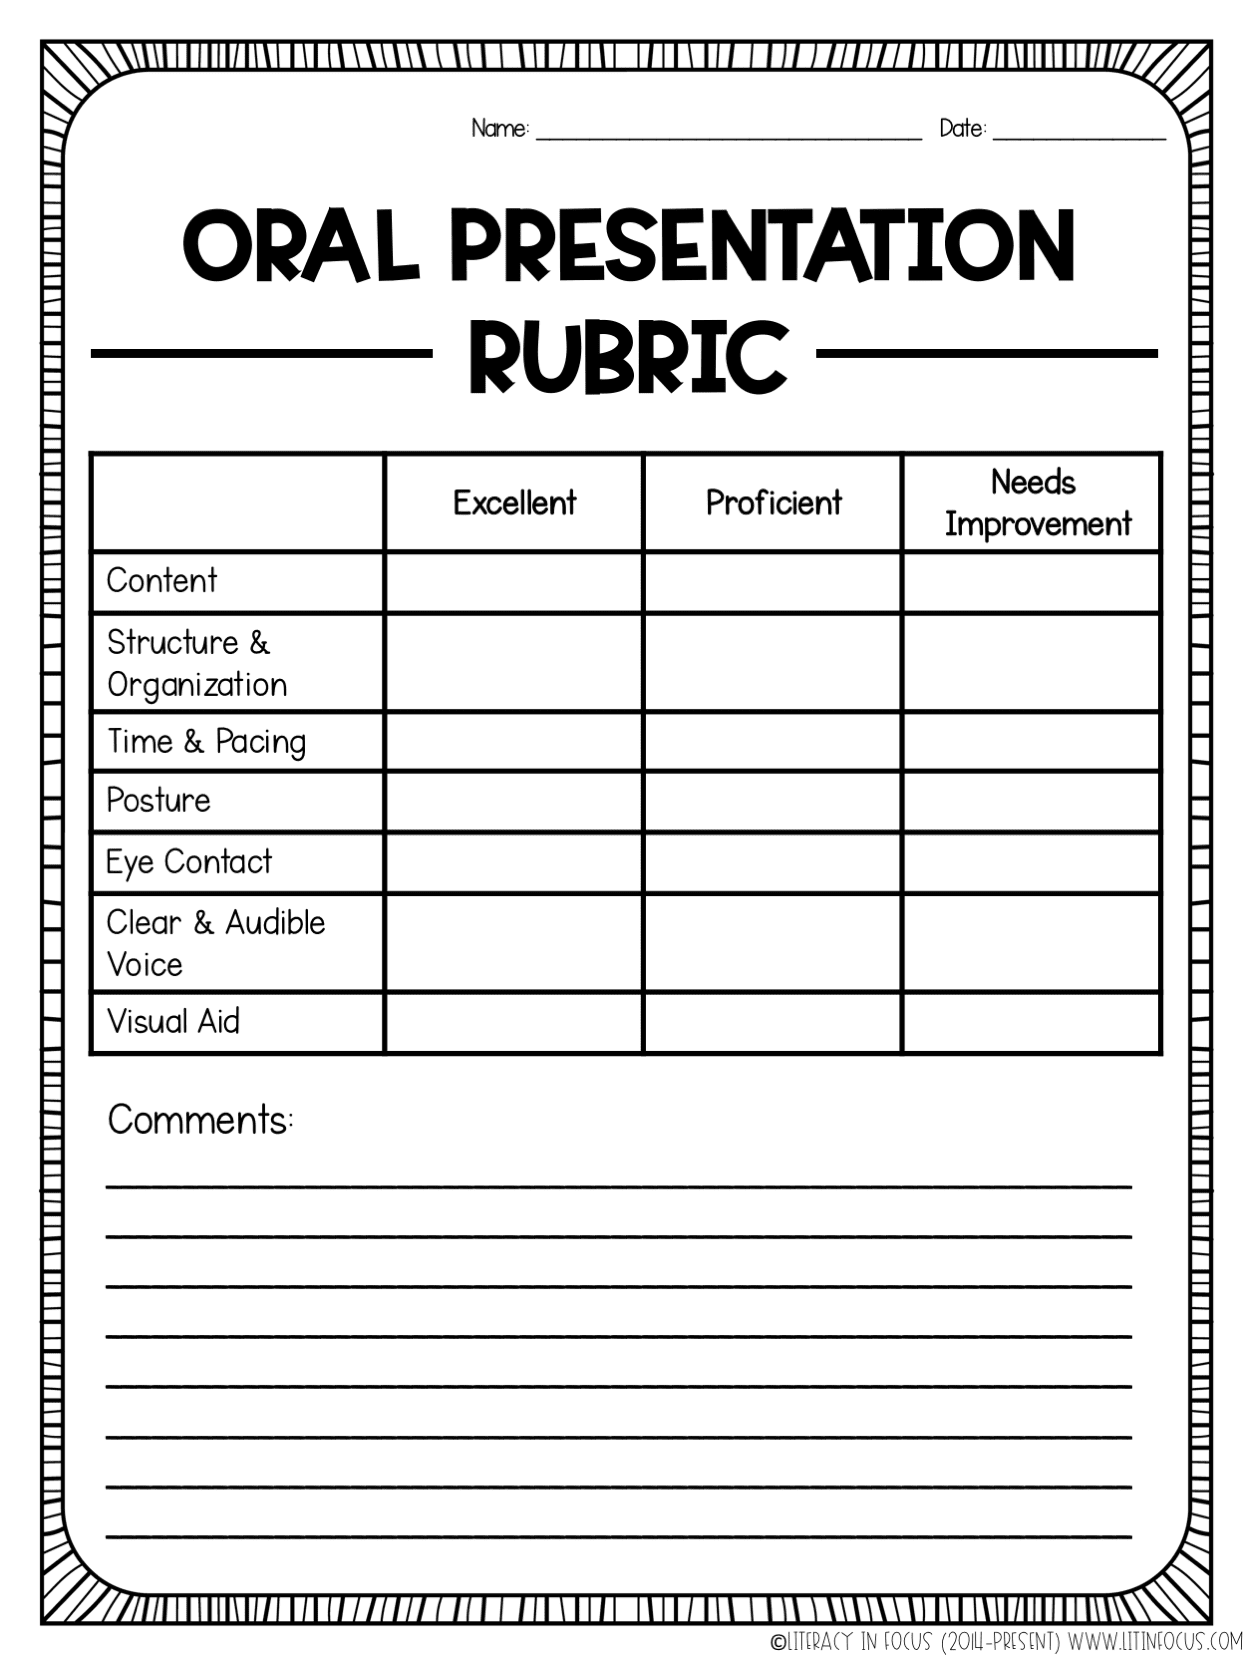 oral presentation rubric readwritethink